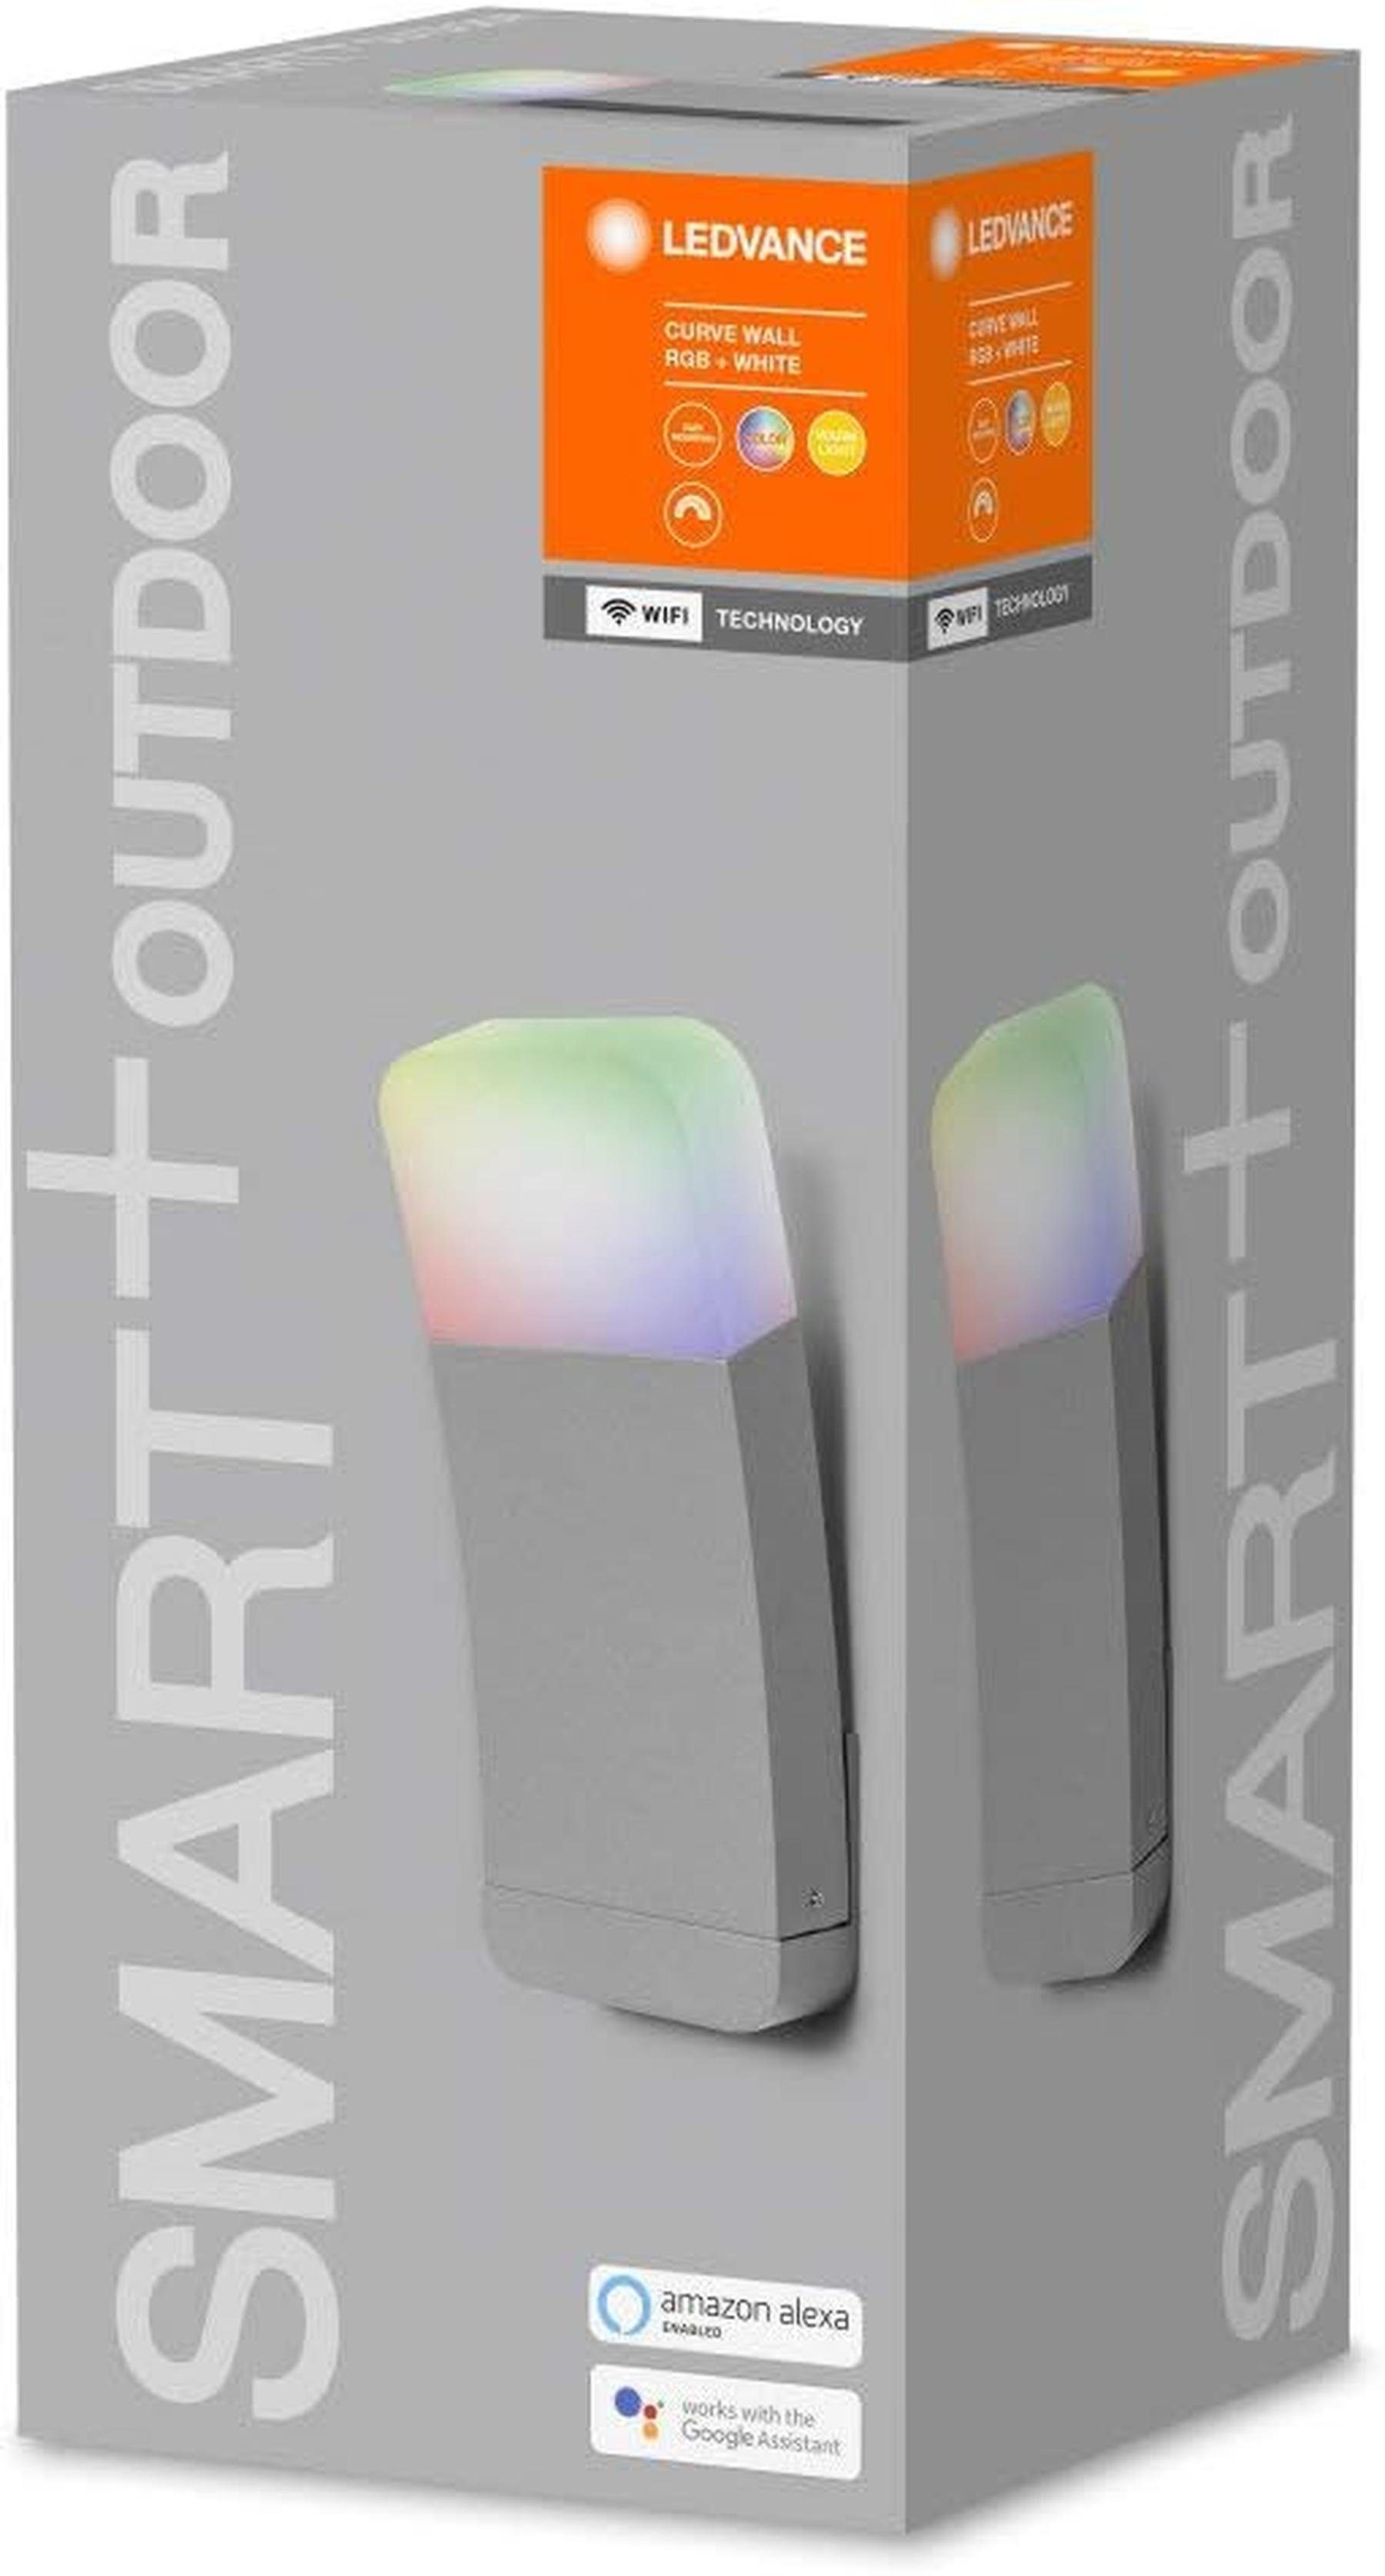 Smarte + für Warmweiß Wand Aussenleuchte WiFi mit Ledvance Dimmbar Technologie, Außen-Wandleuchte LED die Ledvance RGB,